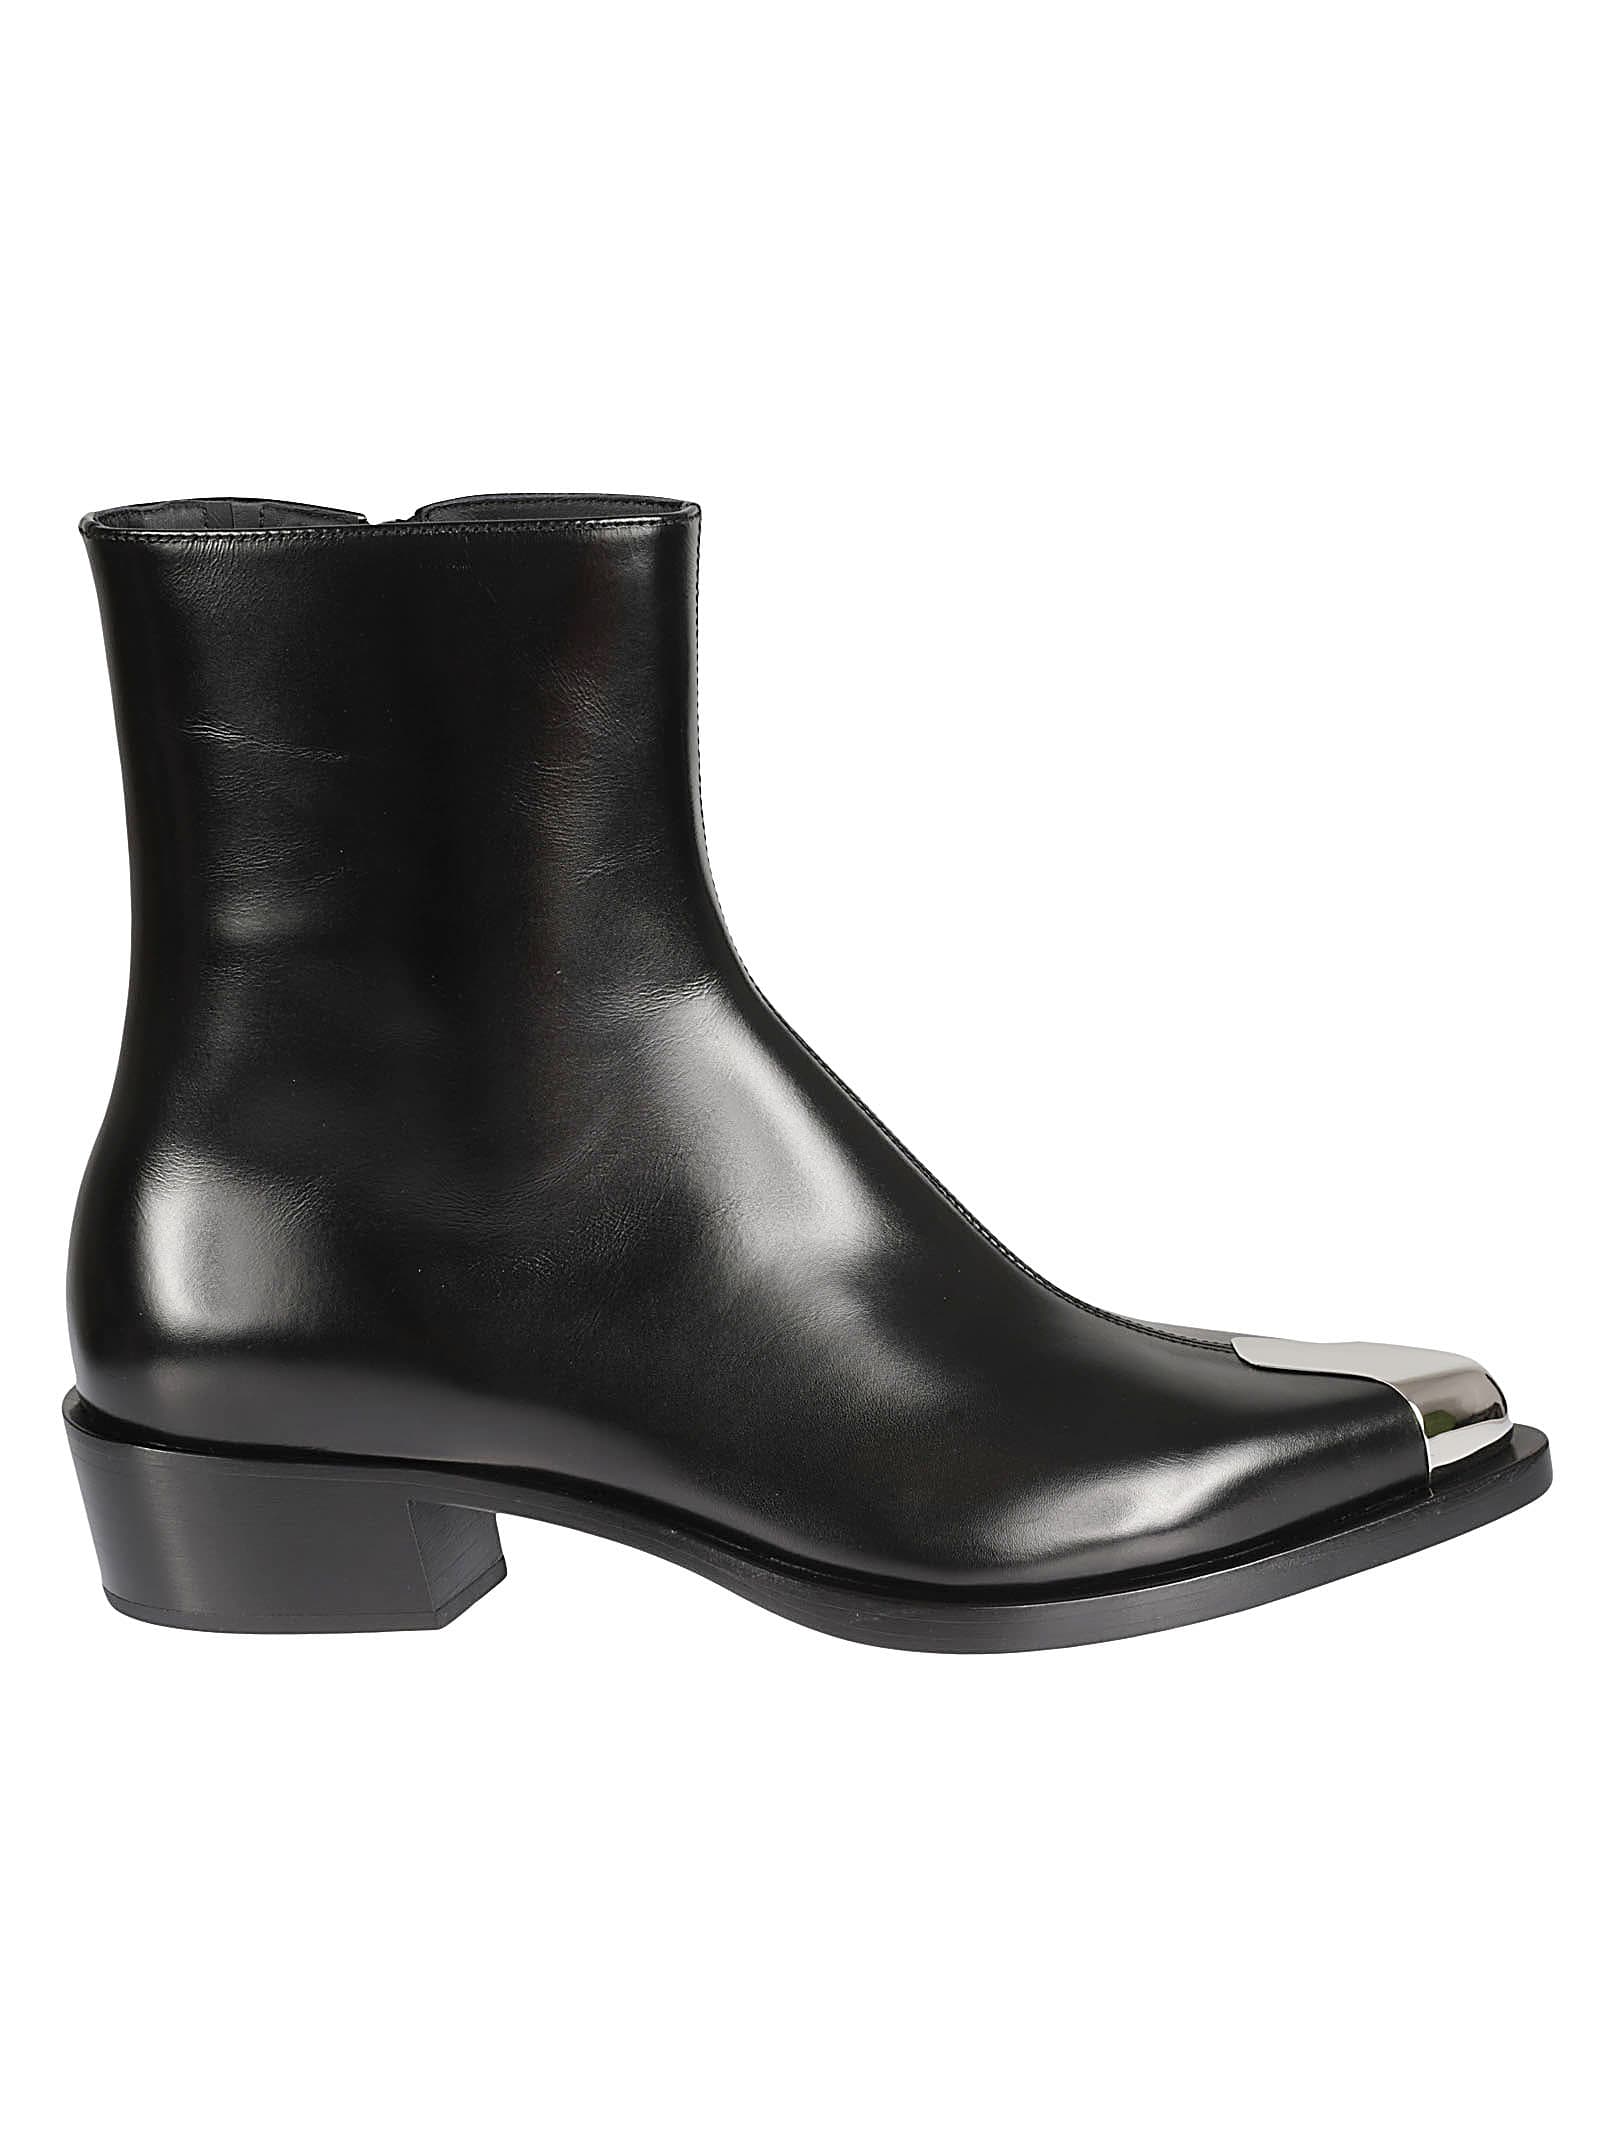 Alexander McQueen Metallic Toe Side Zip Boots